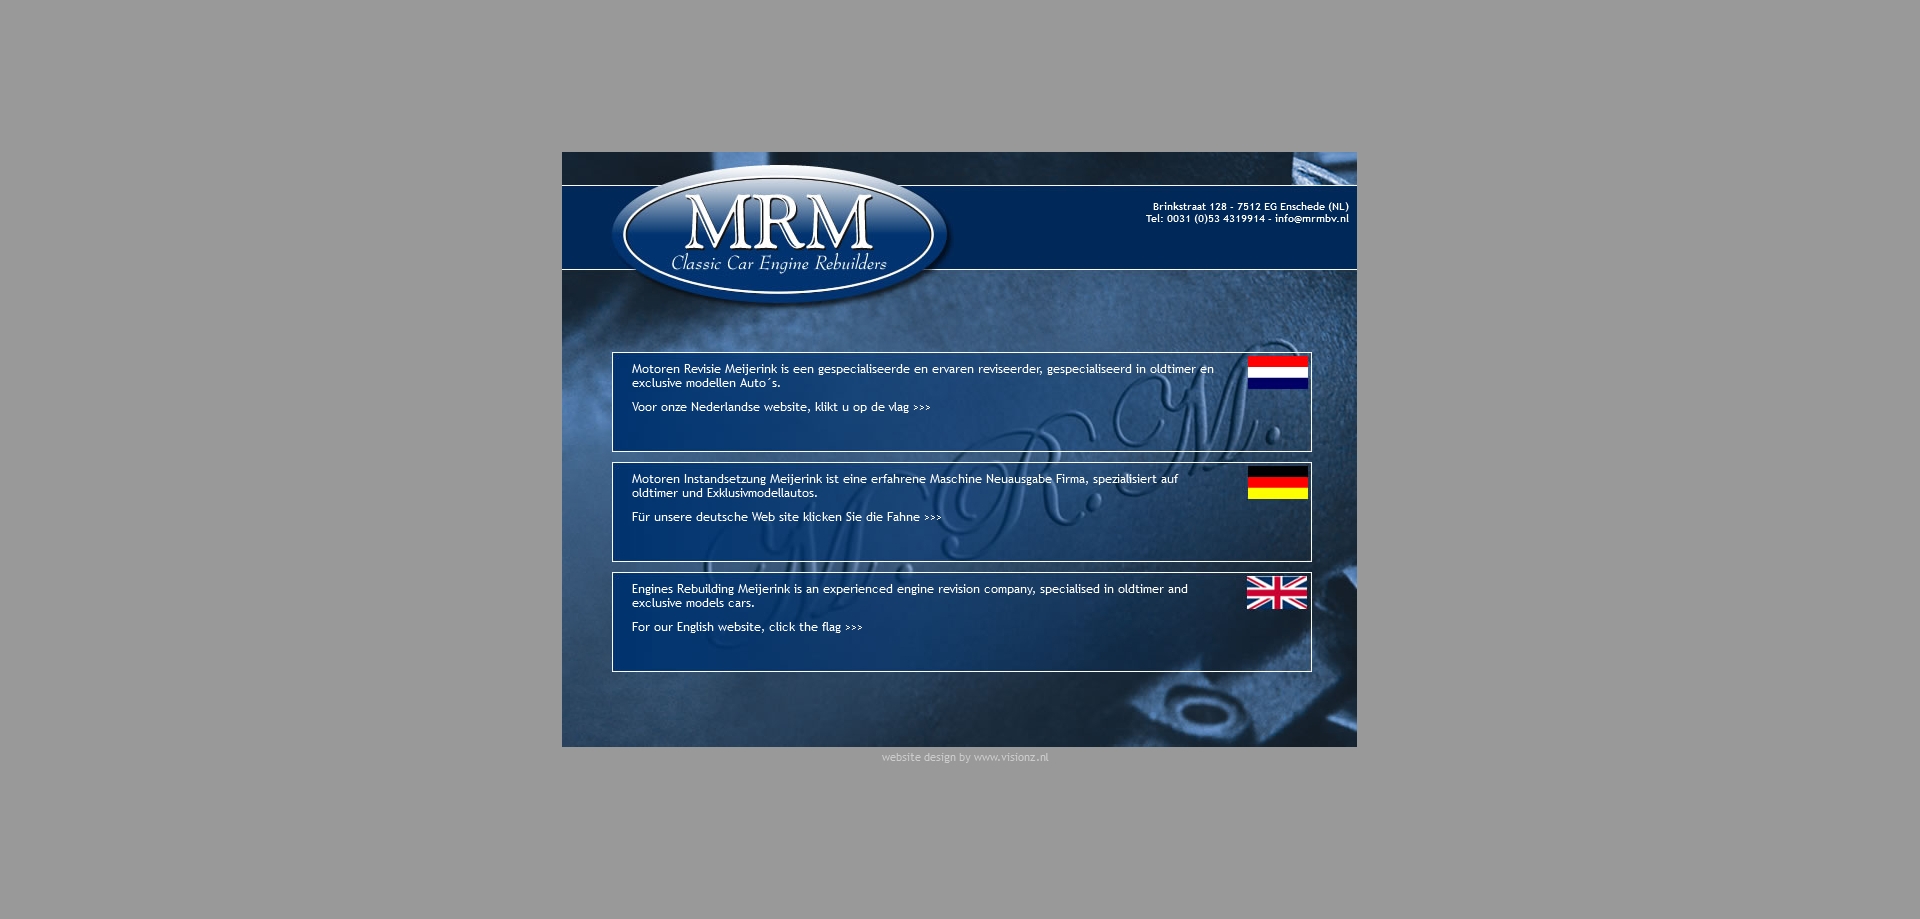 MRM Motoren Revisie Meijerink